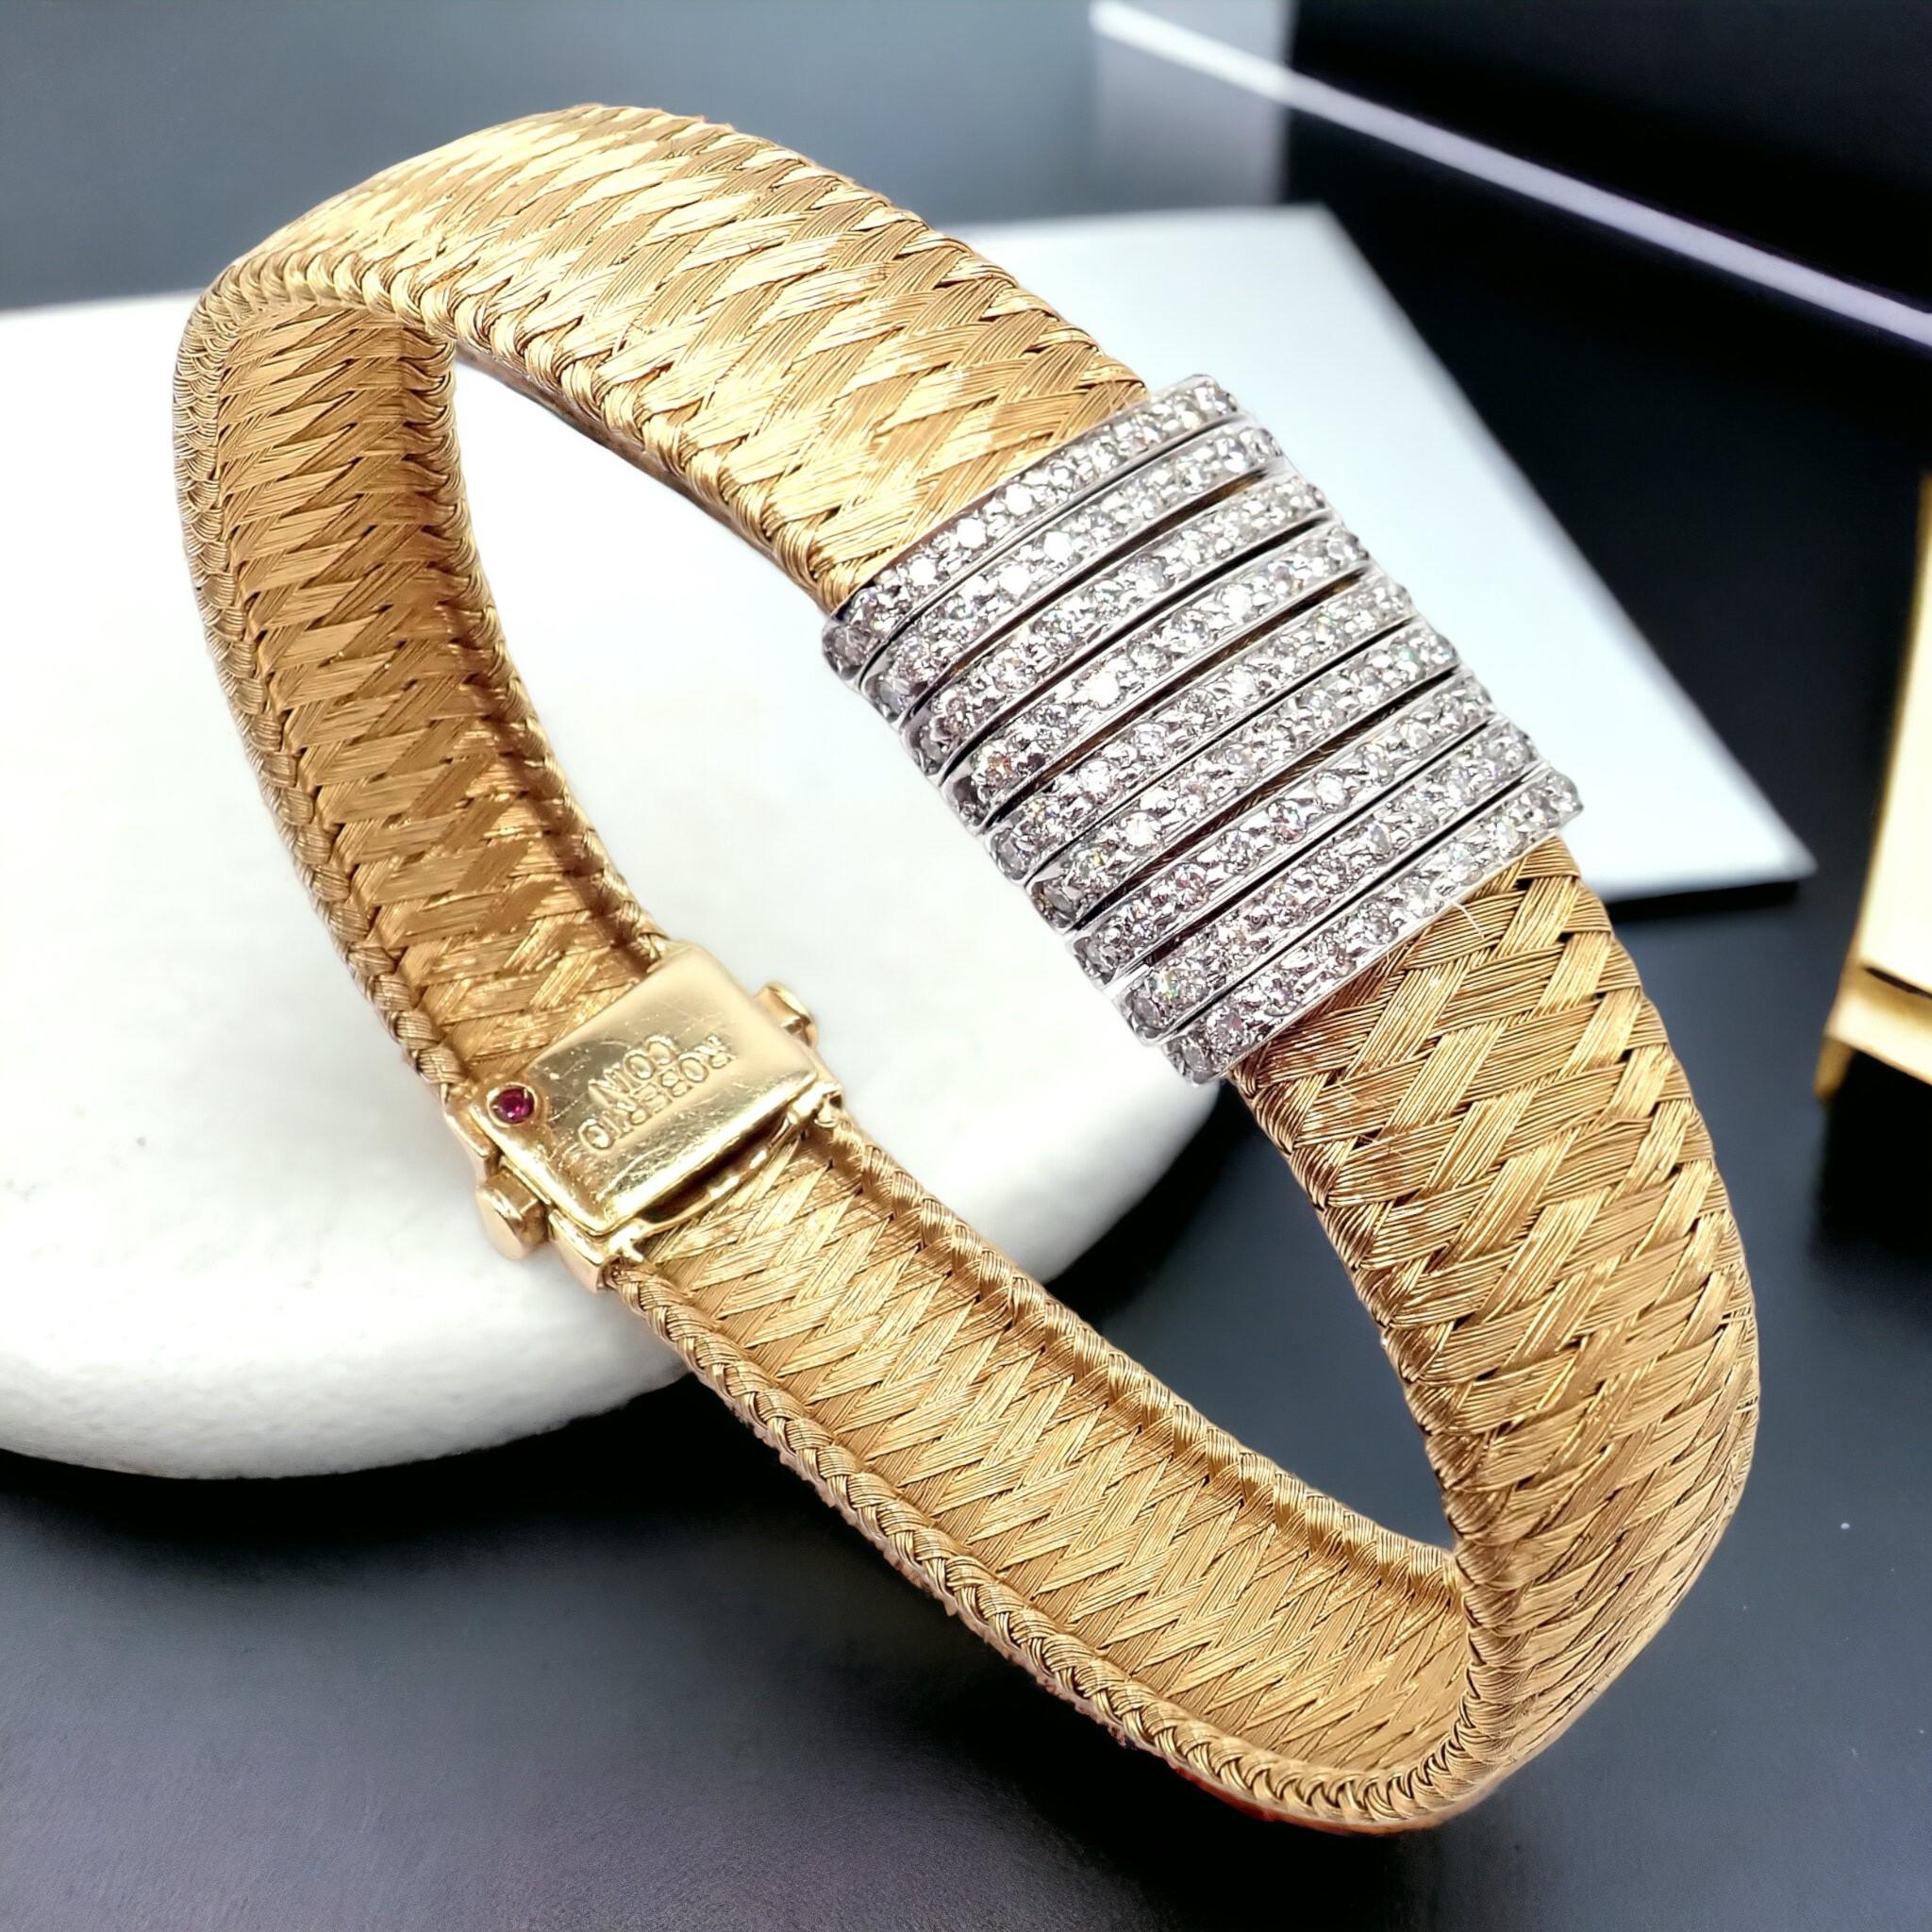 Le bracelet Roberto Coin en or jaune 18k à 9 rangs de diamants est un bijou exquis. Elle présente neuf rangs de diamants sertis dans des barrettes en or blanc 18k. Ces barres sont serties sur un motif de vannerie pour ressembler à de la soie,